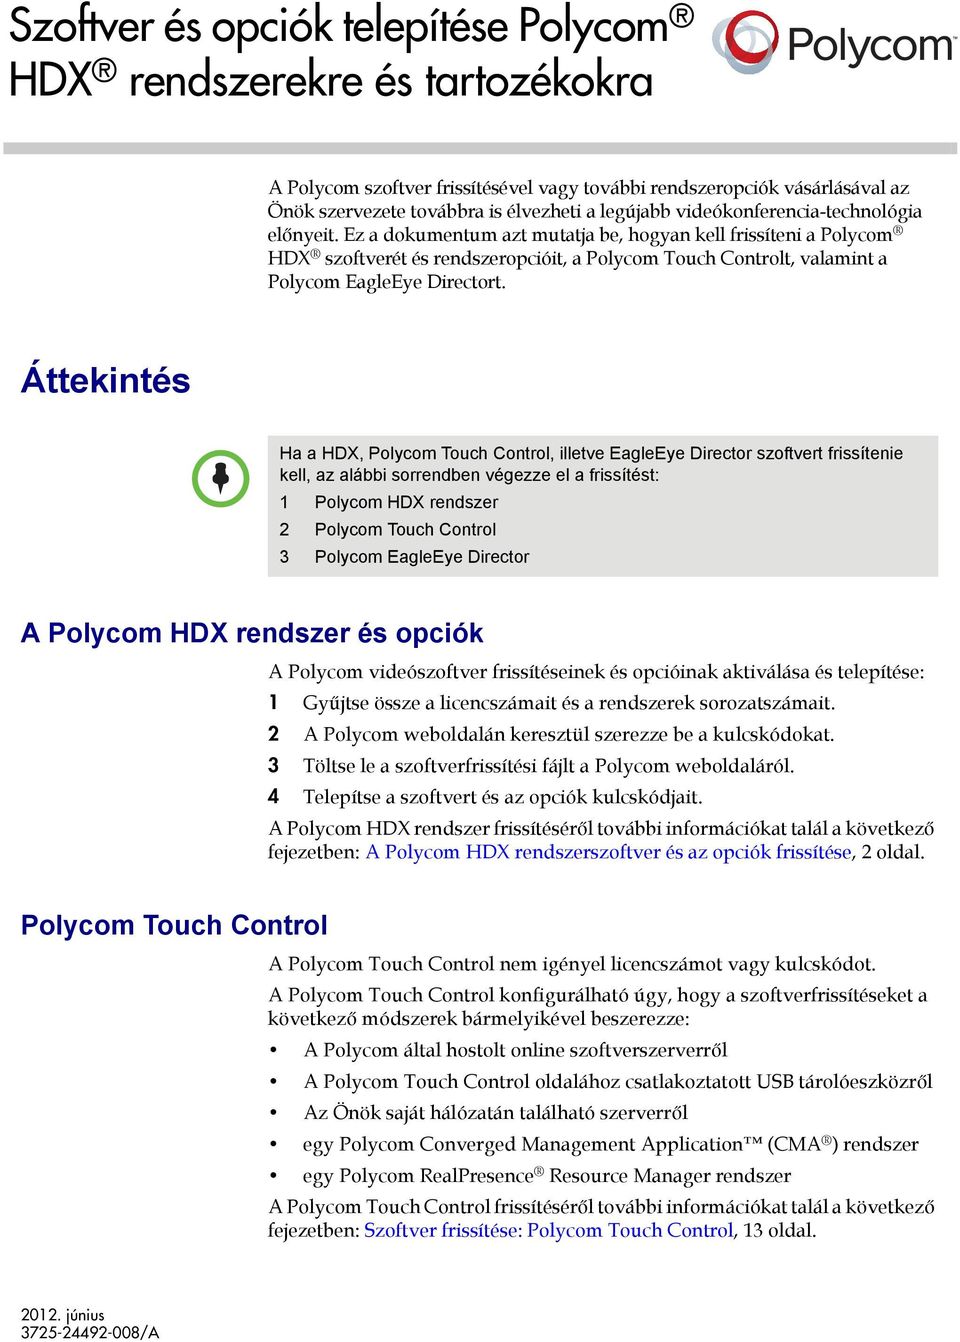 Ez a dokumentum azt mutatja be, hogyan kell frissíteni a Polycom HDX szoftverét és rendszeropcióit, a Polycom Touch Controlt, valamint a Polycom EagleEye Directort.